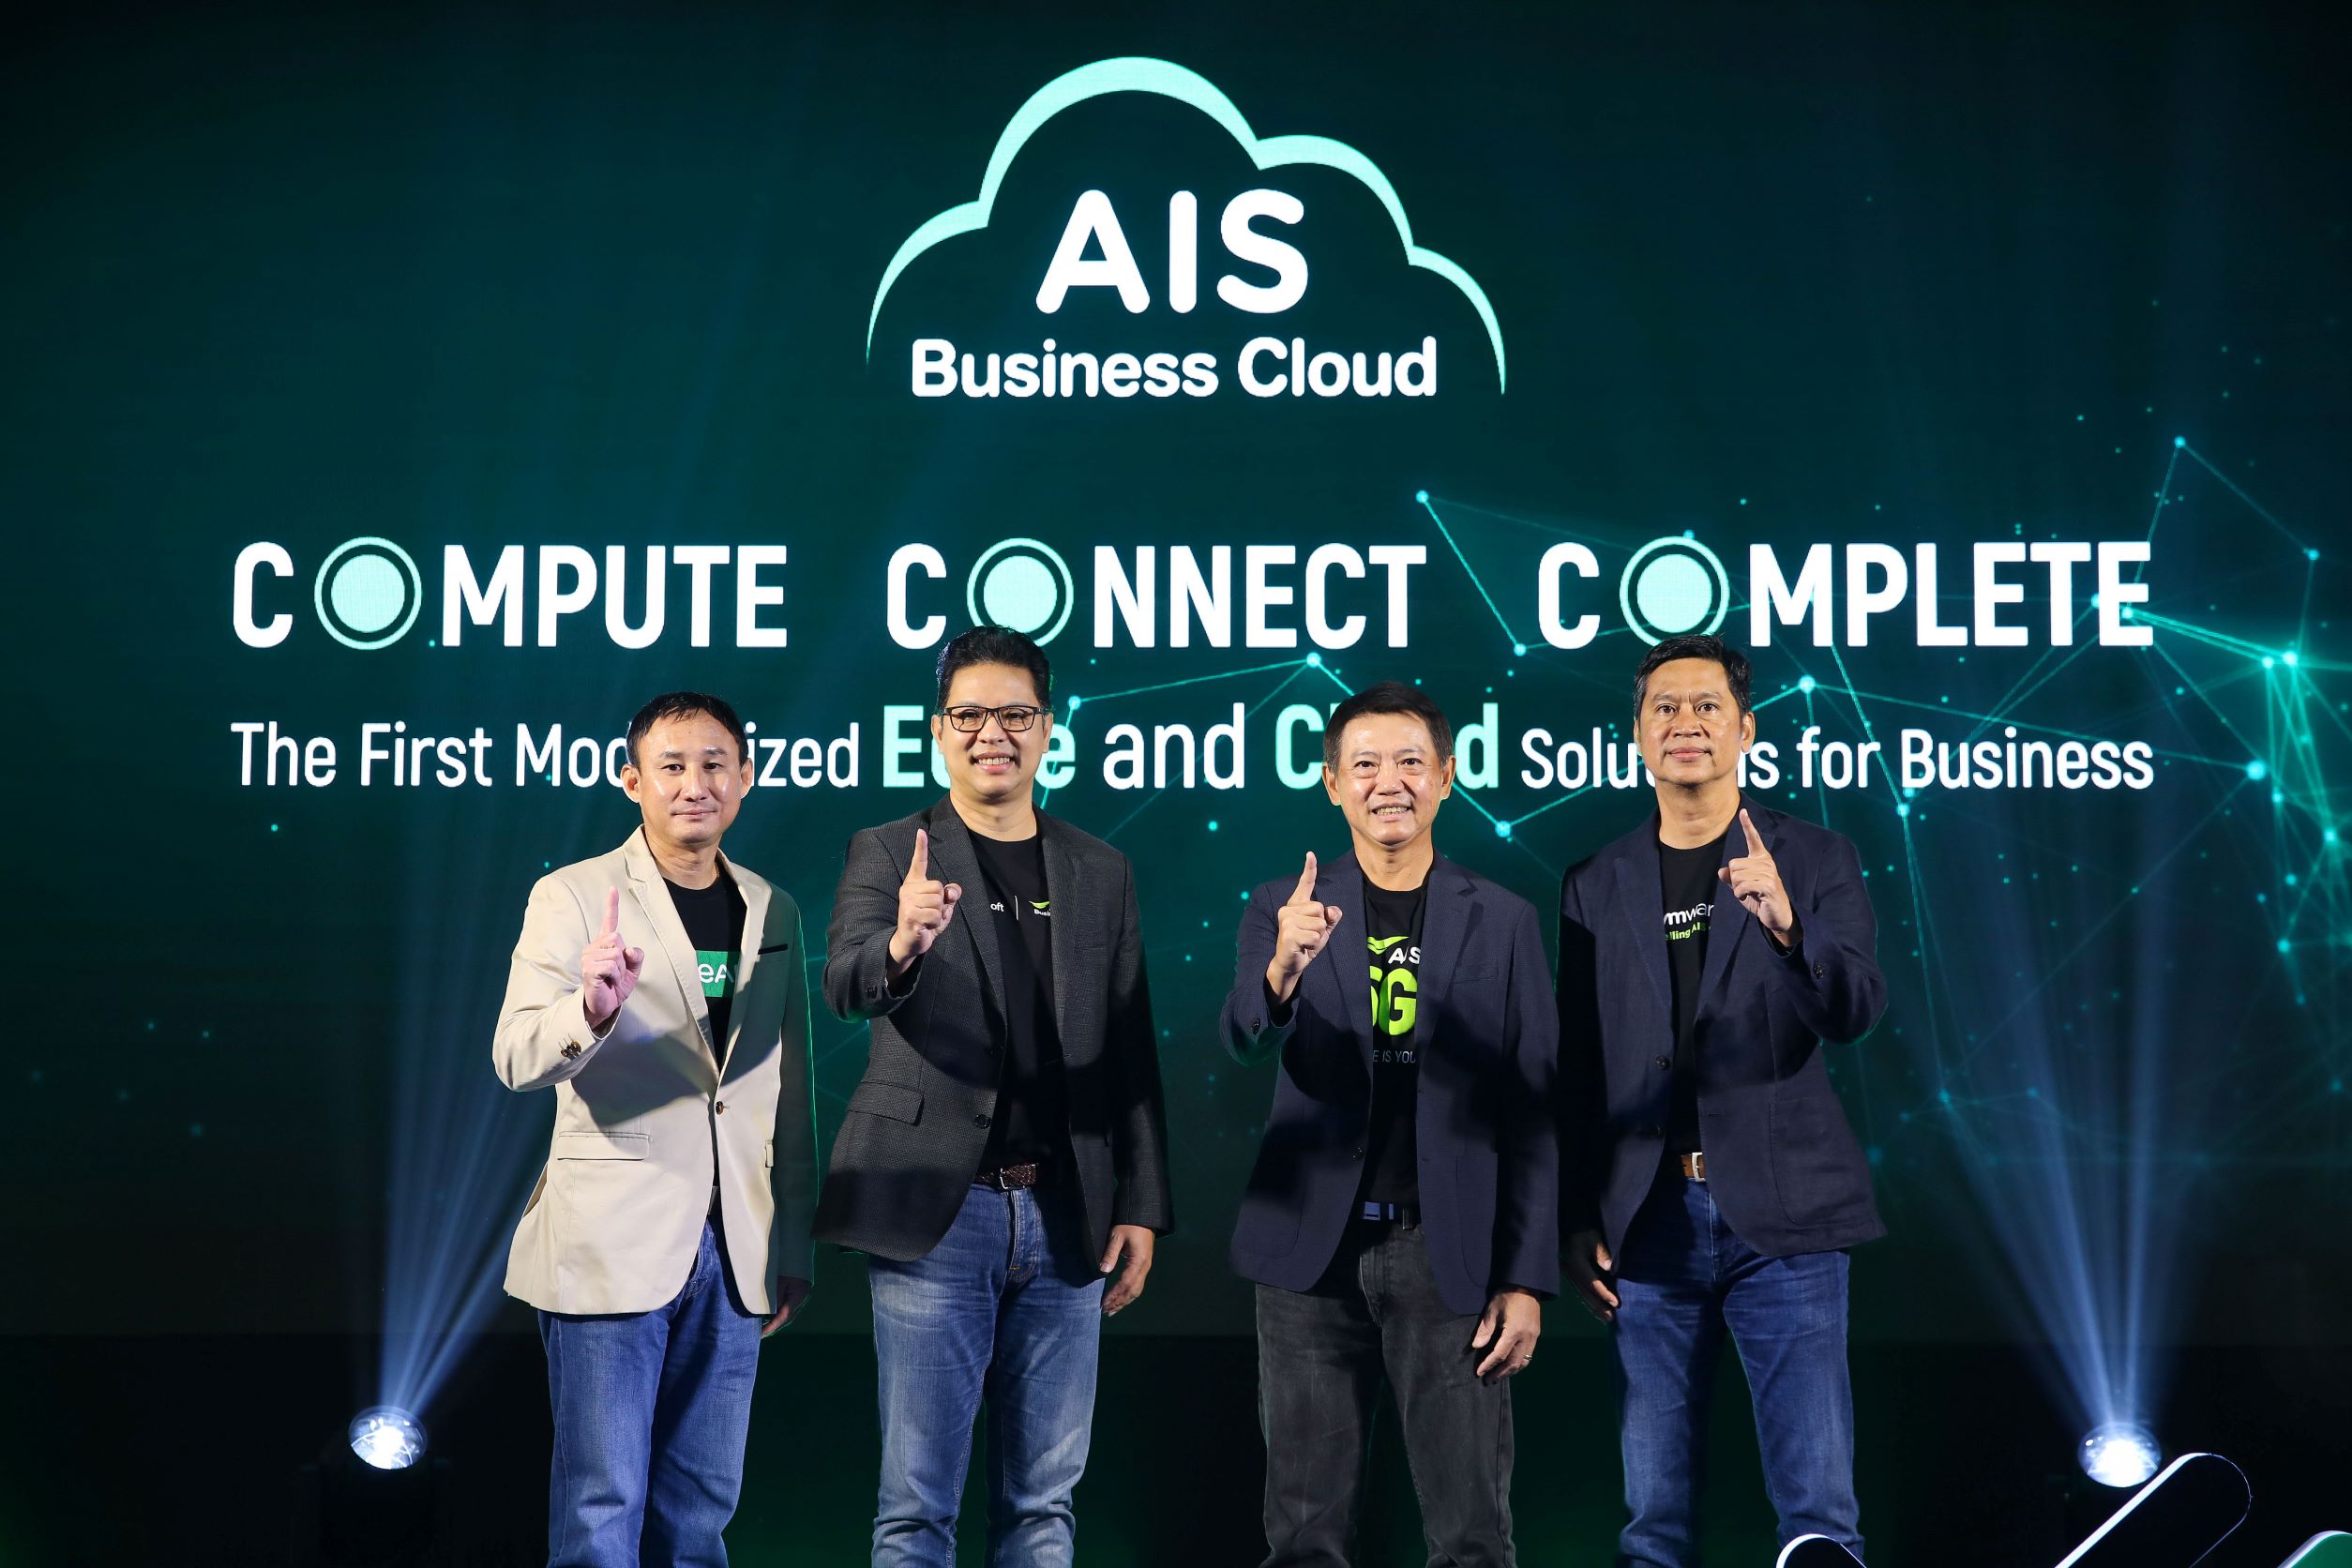 AIS Business Cloud 2022 เปิดตัว 'AIS Cloud X' ผนึกพาร์ทเนอร์ระดับโลก พัฒนาโครงสร้างพื้นฐานคลาวด์และแพลตฟอร์ม Cloud Native พร้อมเป็นผู้ให้บริการ Sovereign Cloud รายแรกในเอเชียตะวันออกเฉียงใต้